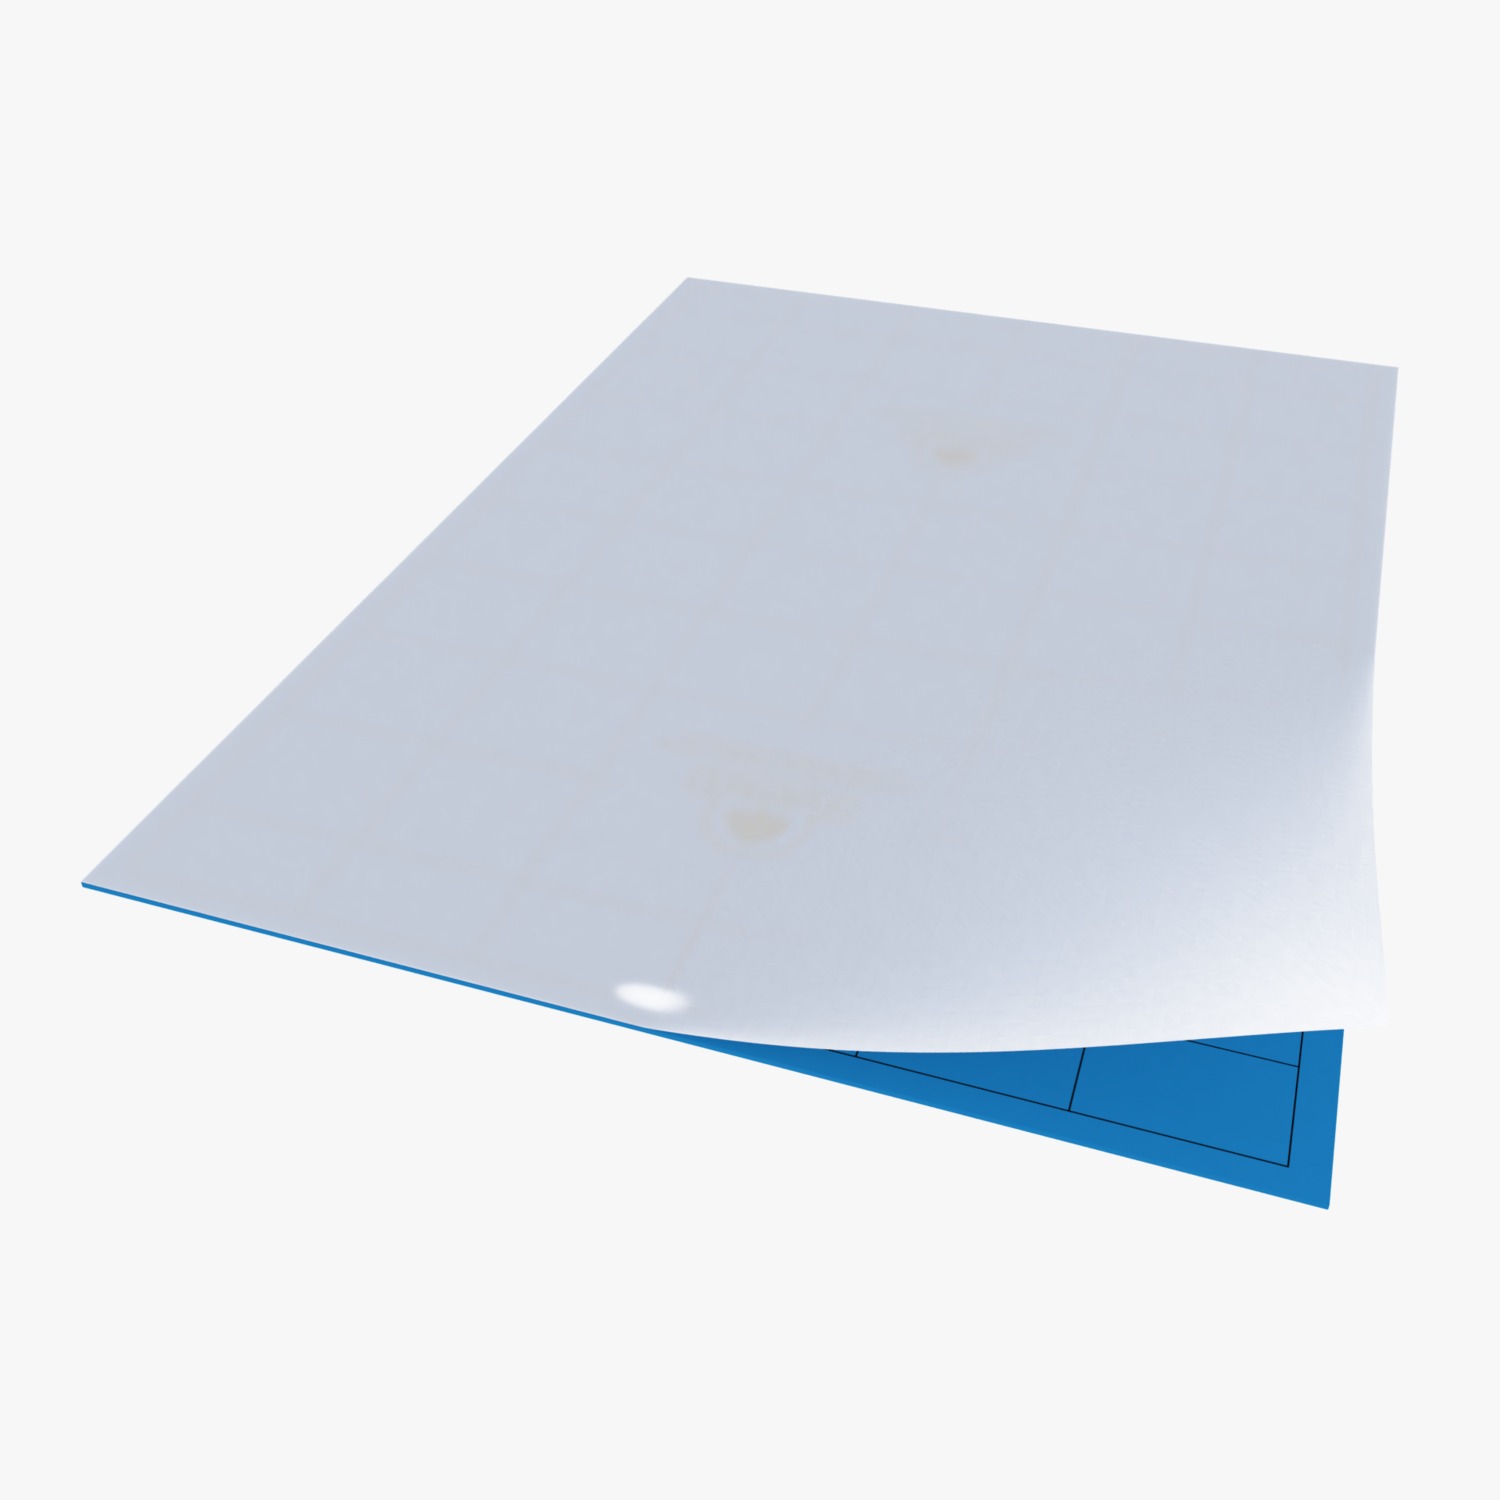 BLUE STICKY TRAP(25cm X 12.5cm)